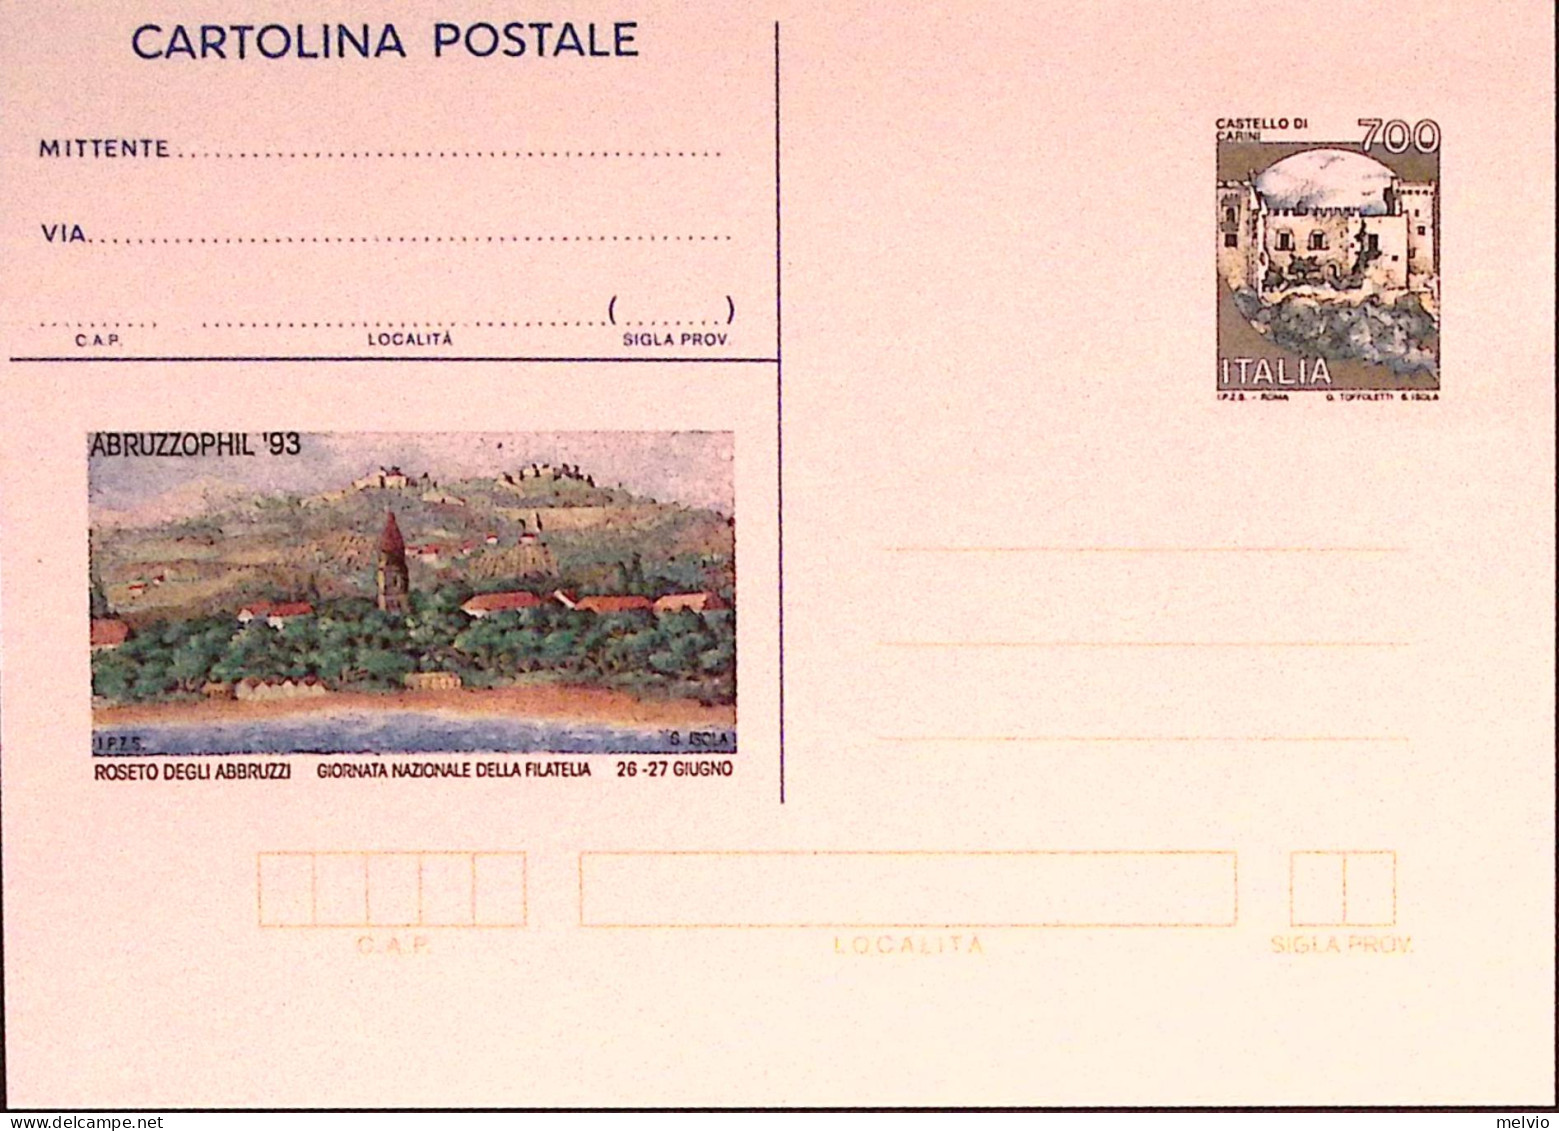 1993-ABRUZZOPHIL Cartolina Postale IPZS Lire 700 Nuova - Interi Postali